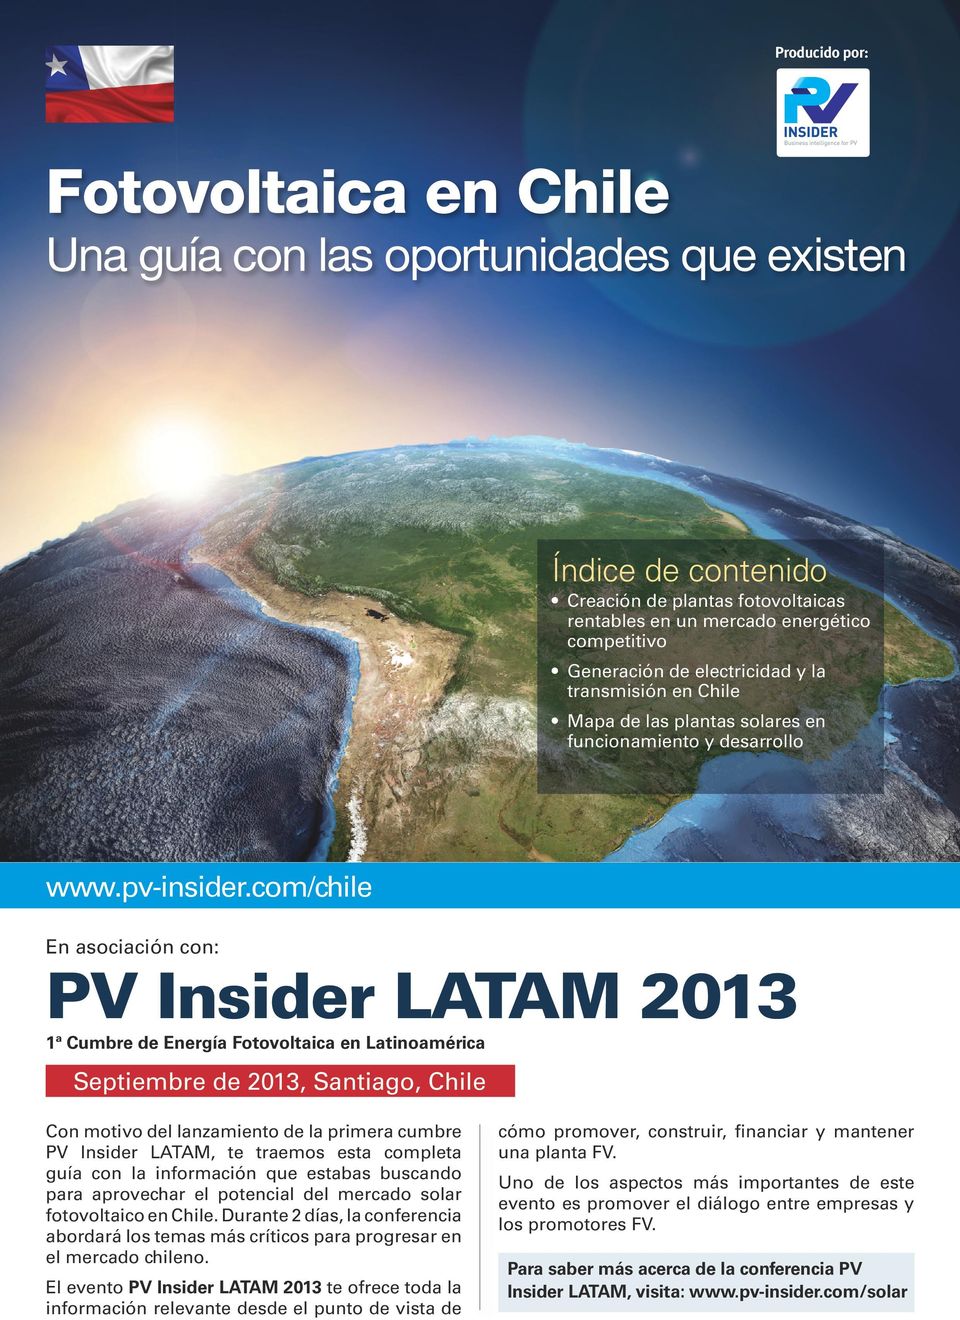 com/chile En asociación con: PV Insider LATAM 2013 1ª Cumbre de Energía Fotovoltaica en Latinoamérica Septiembre de 2013, Santiago, Chile Con motivo del lanzamiento de la primera cumbre PV Insider